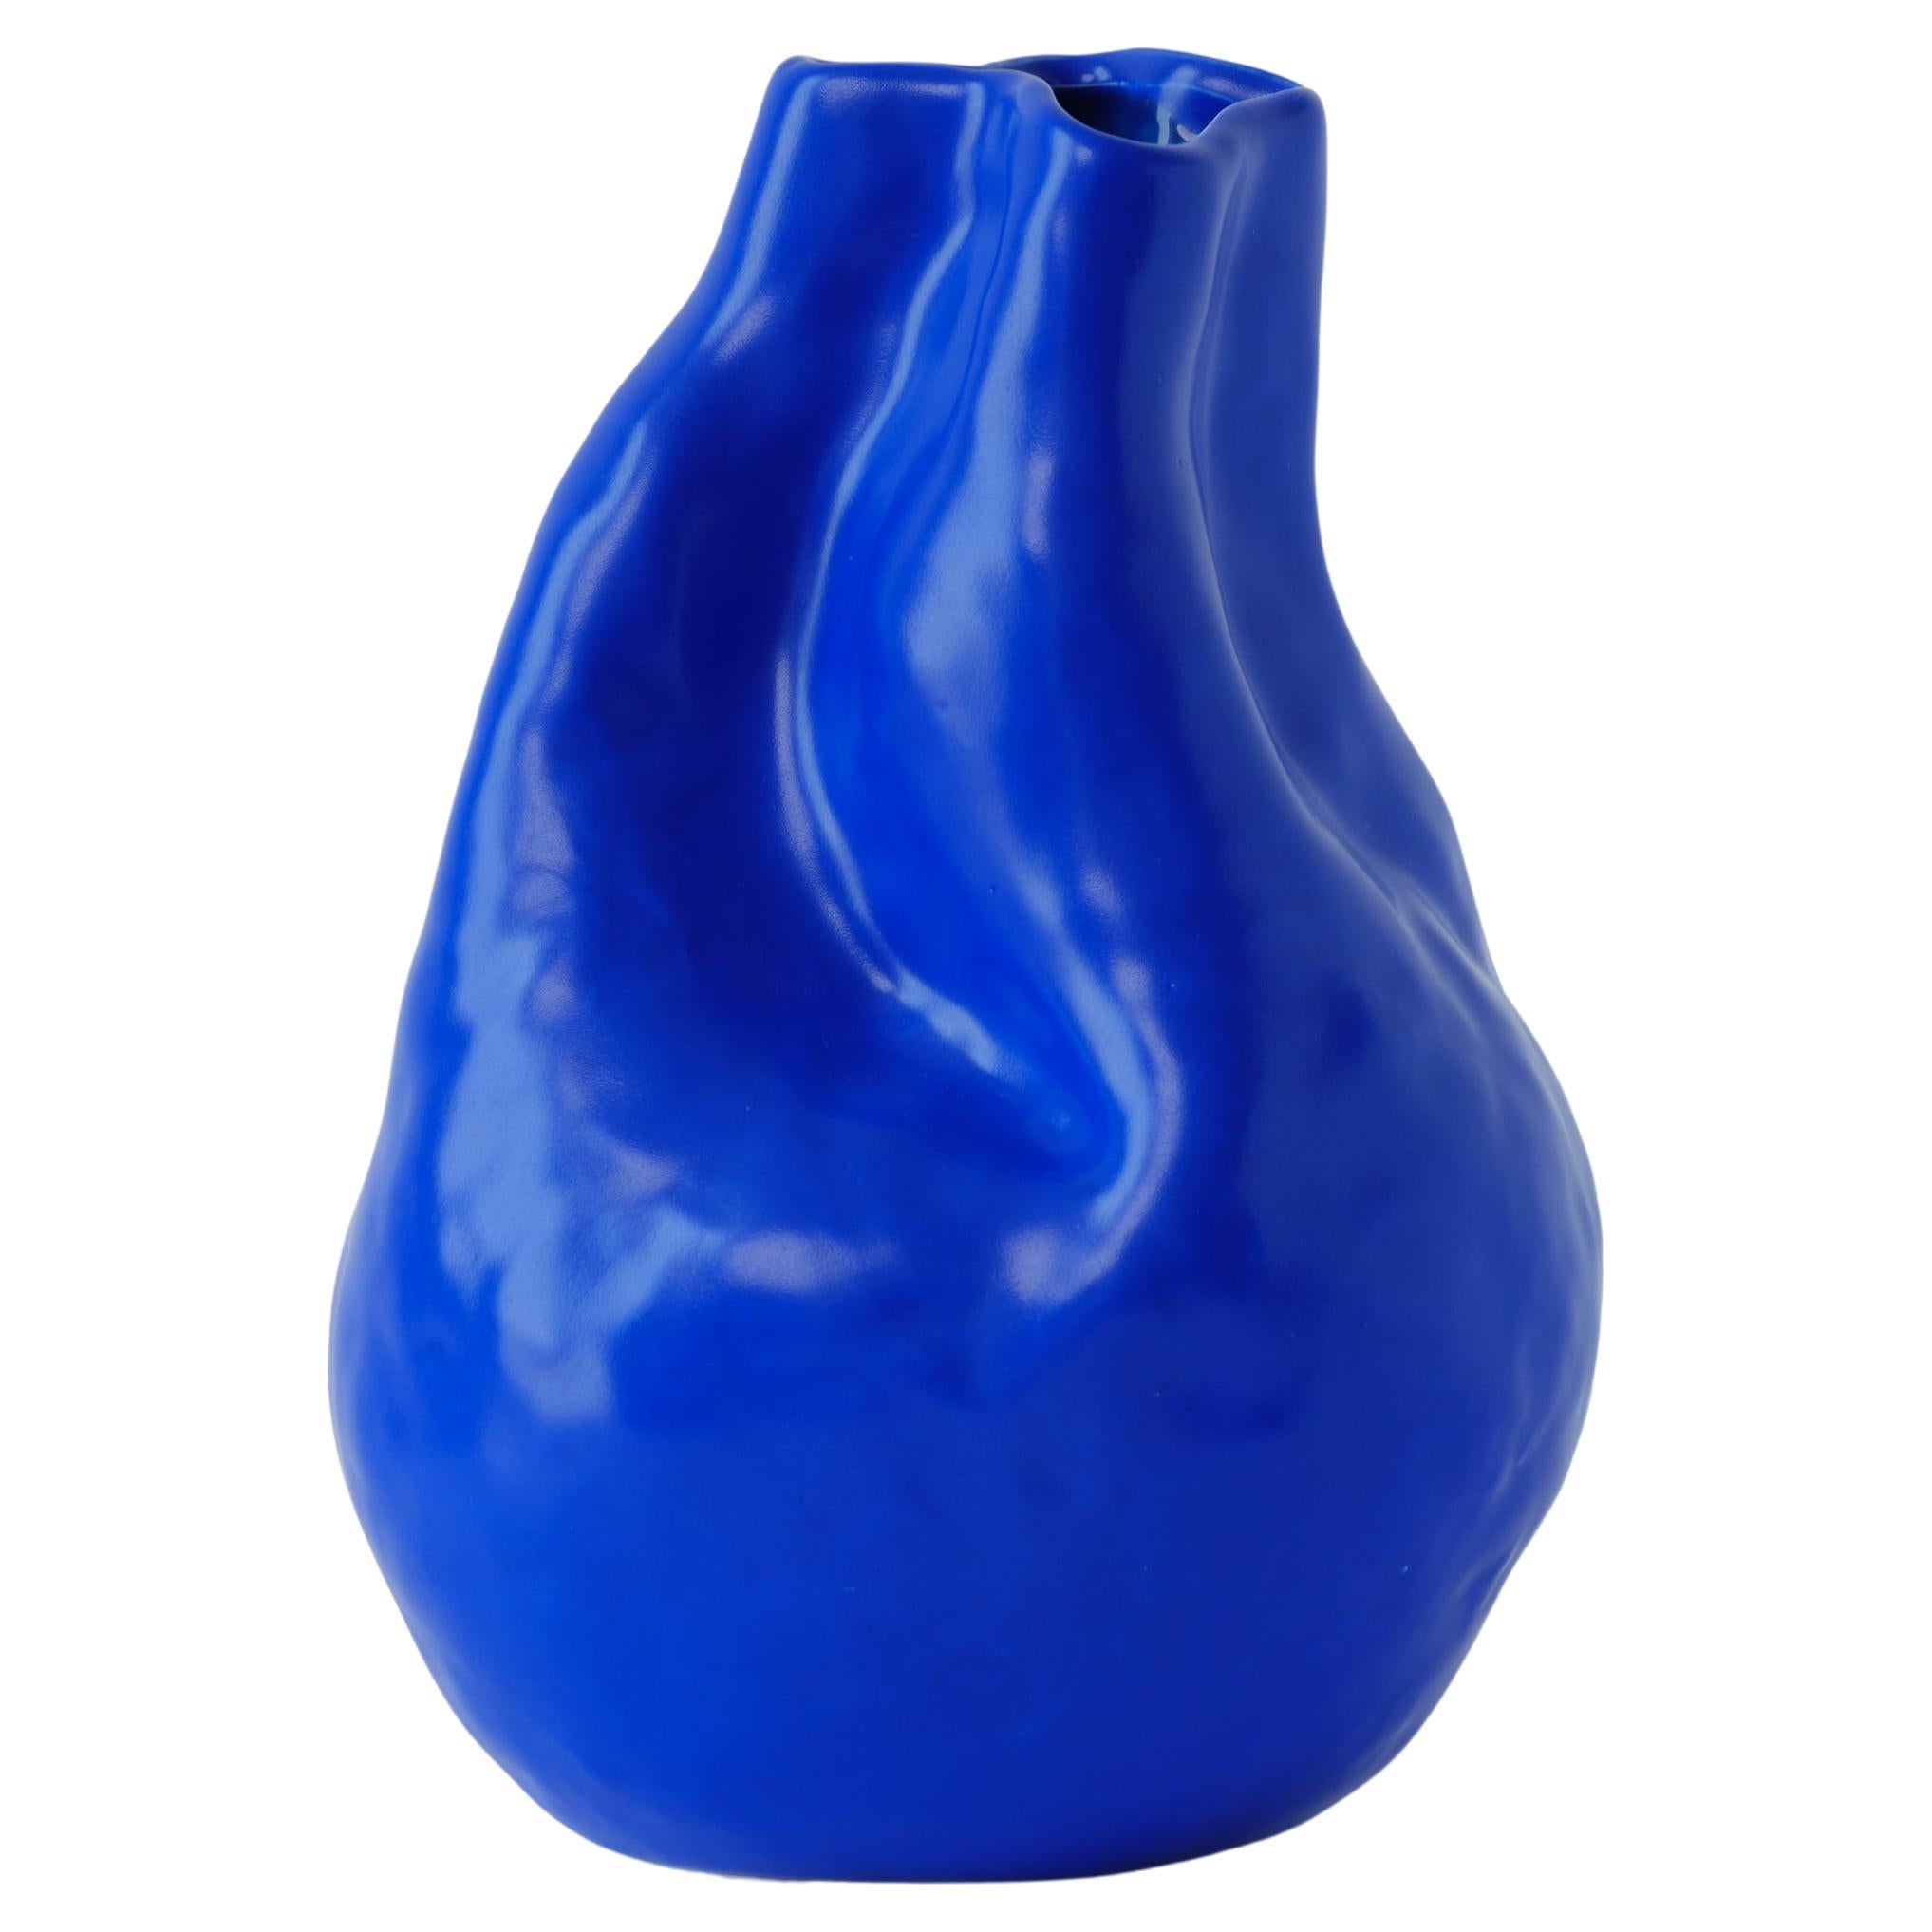 Handgefertigte blaue Alexis-Vase aus Porzellan